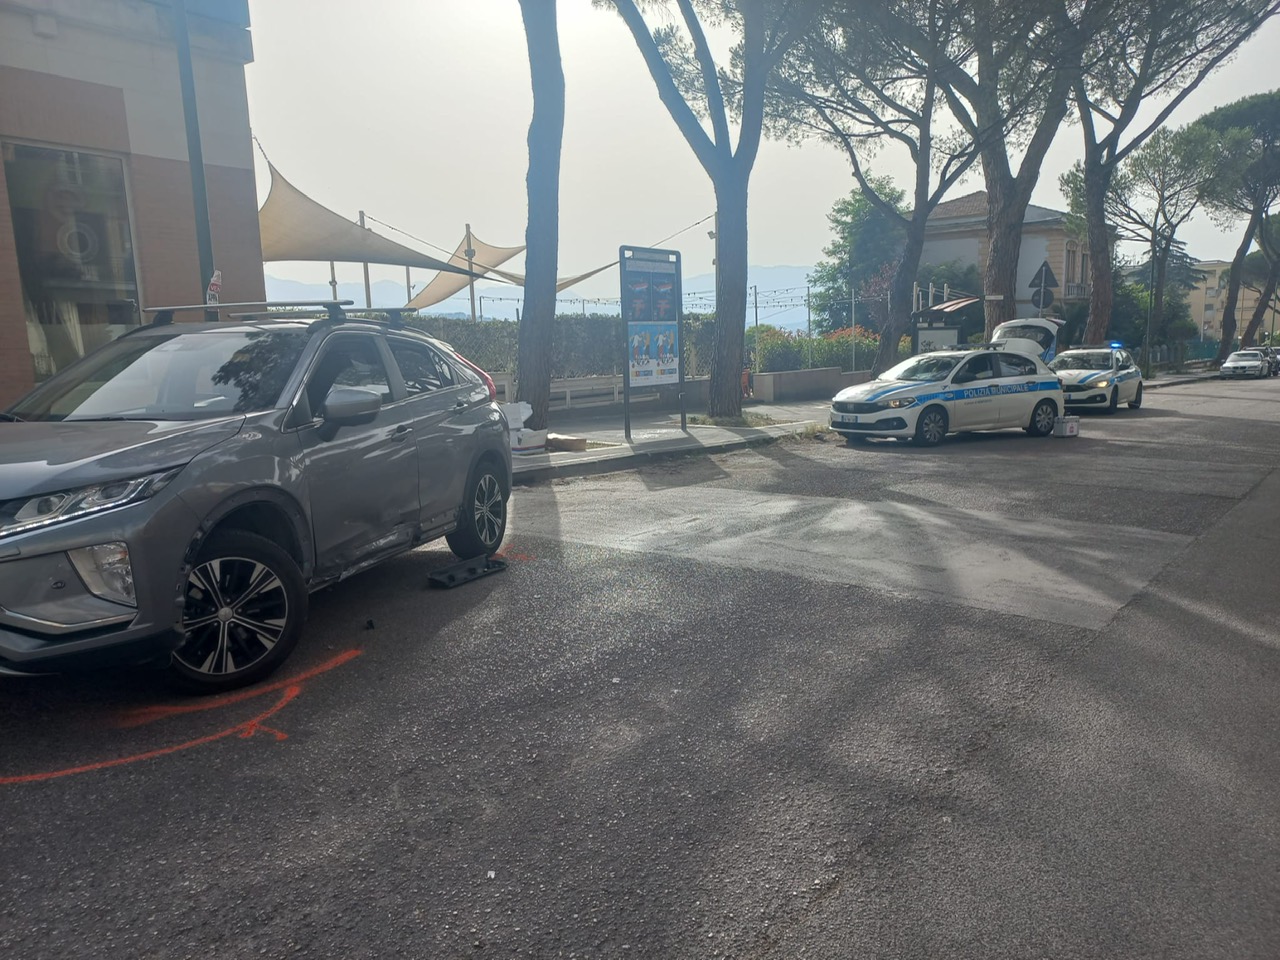 Incidente stradale a Benevento, scontro tra Suv e moto al Viale Atlantici